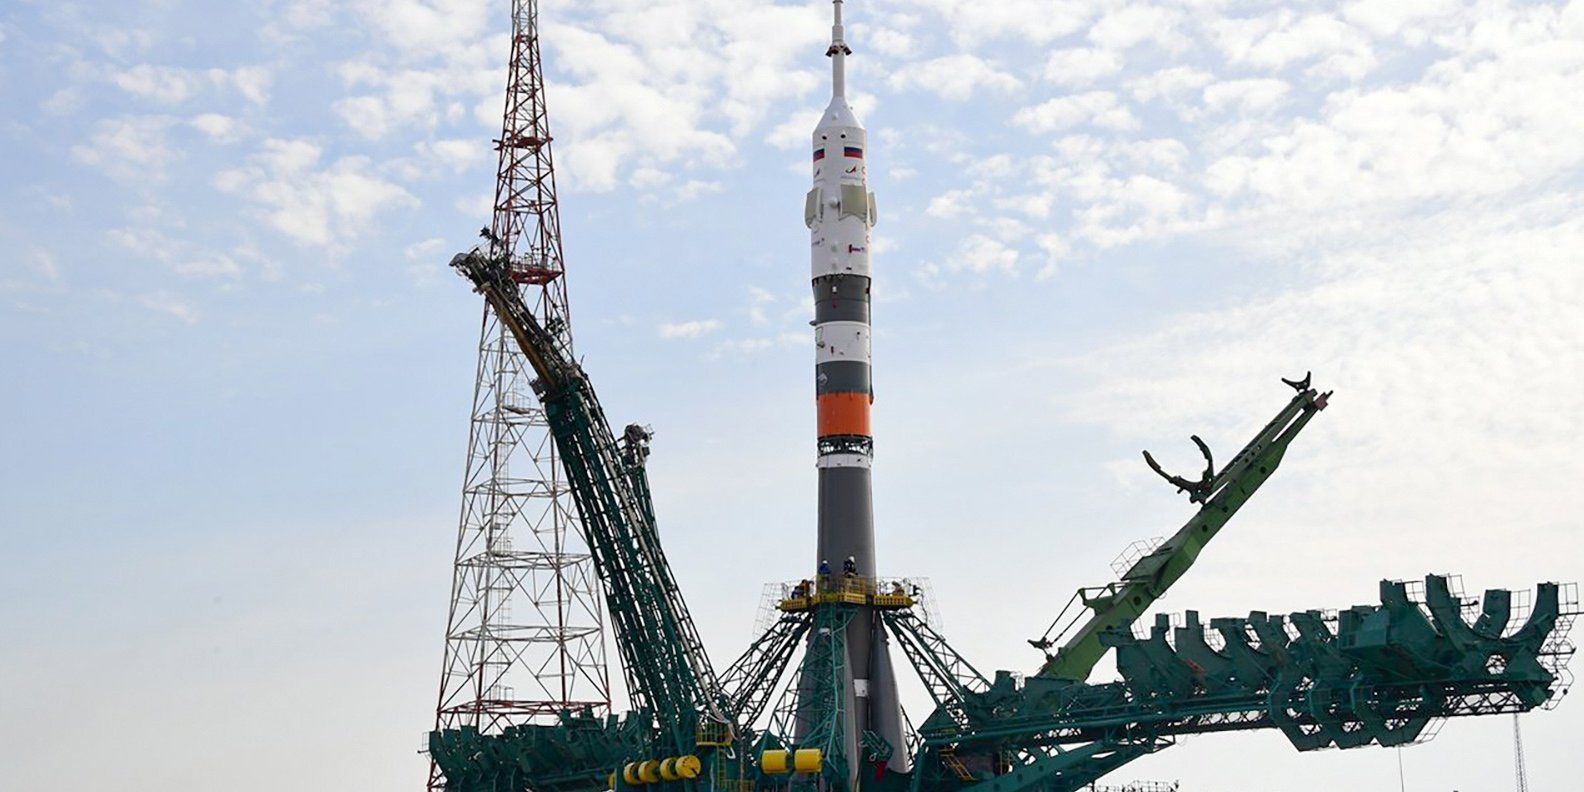 Запуск будет произведен в 11:05 по московскому времени. Фото: сайт мэра Москвы